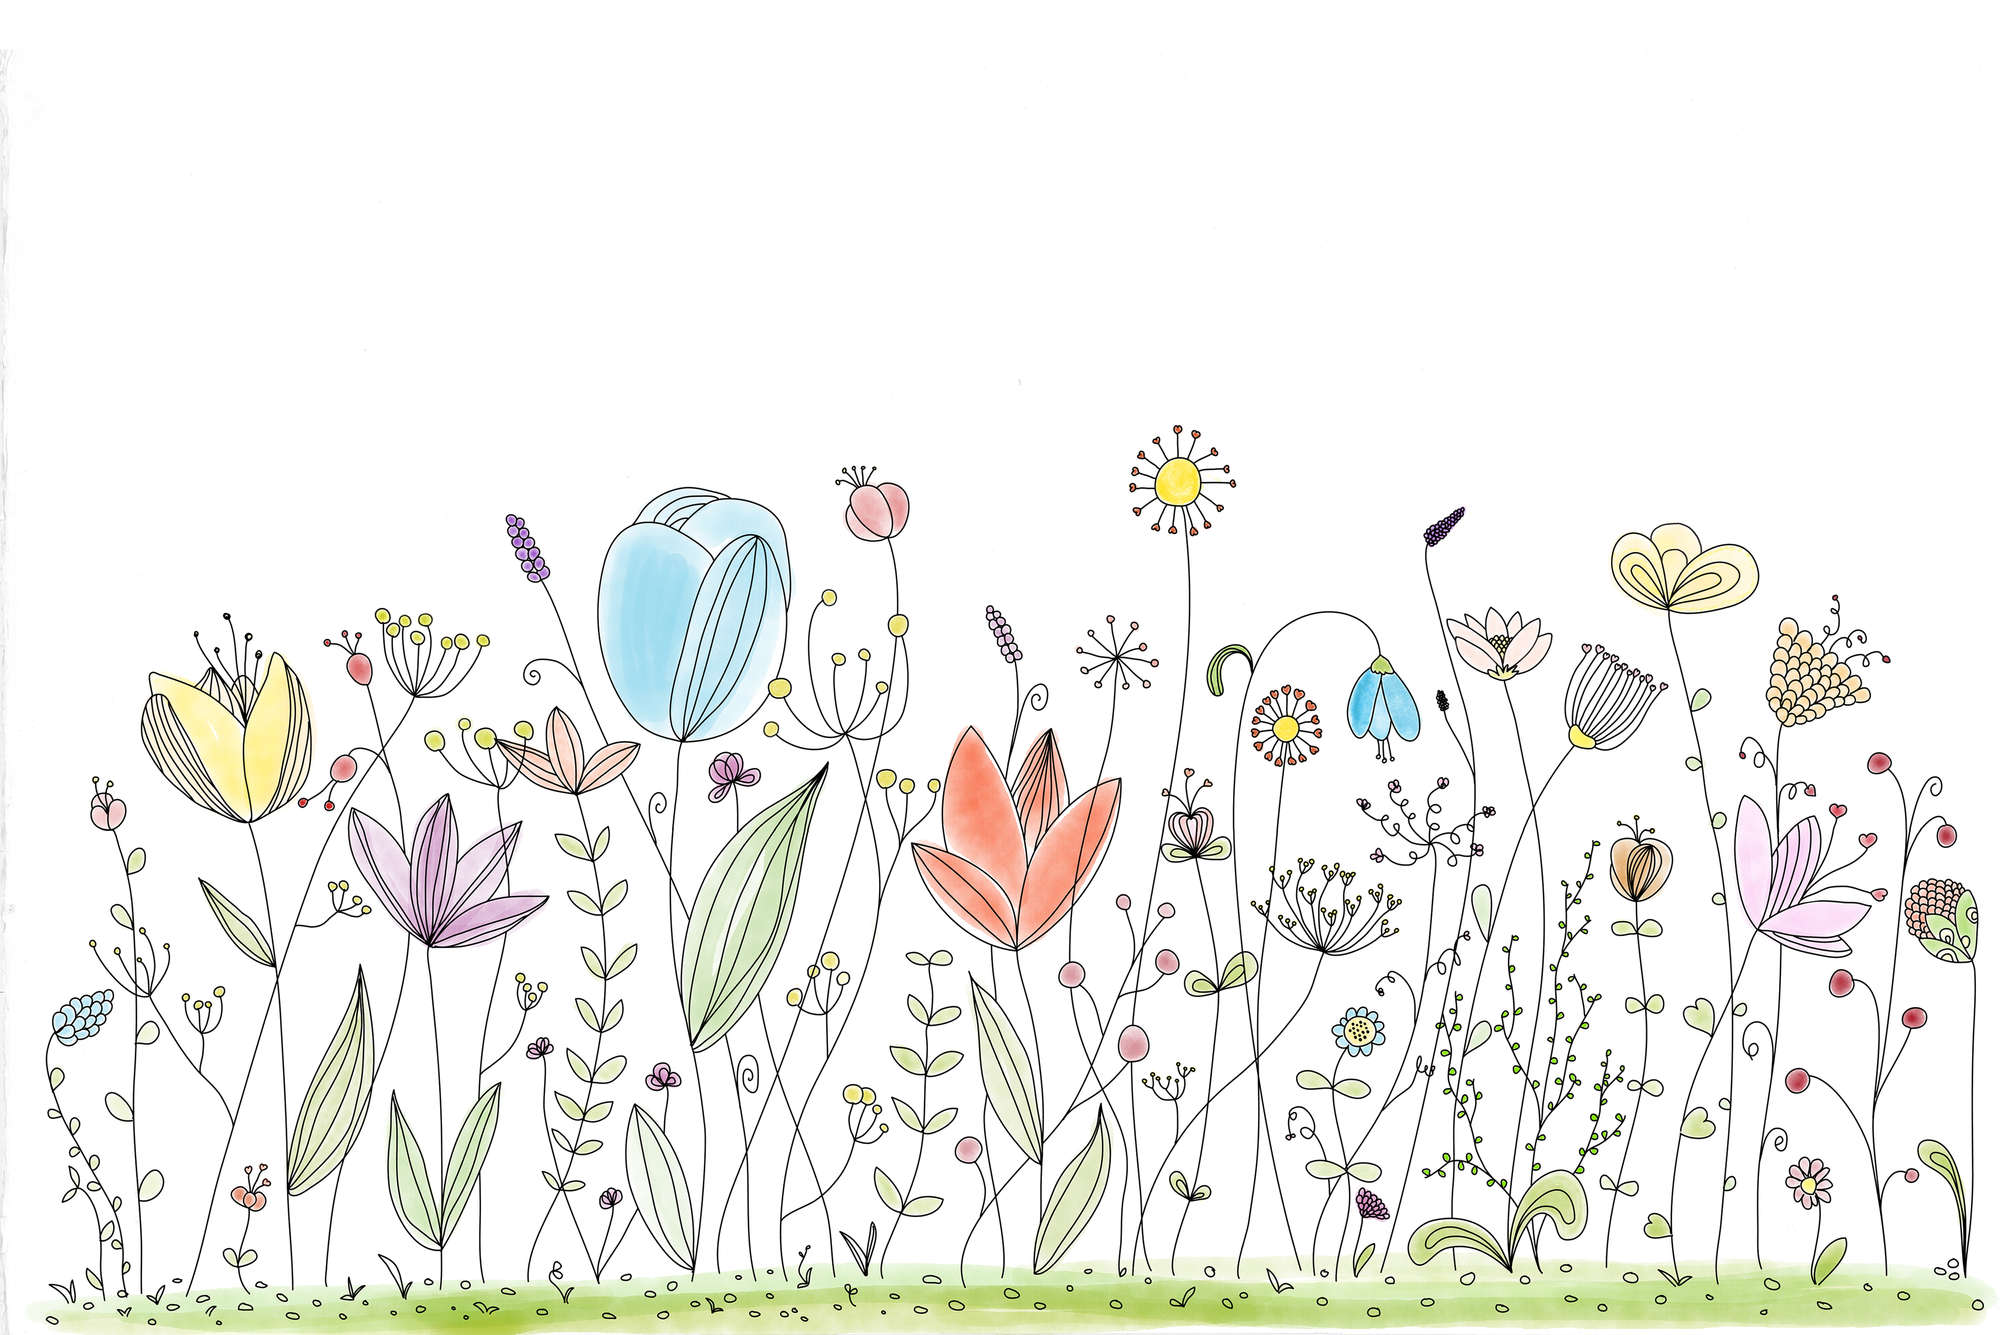             Kinder Fototapete mit bunten gezeichneten Blumen auf Matt Glattvlies
        